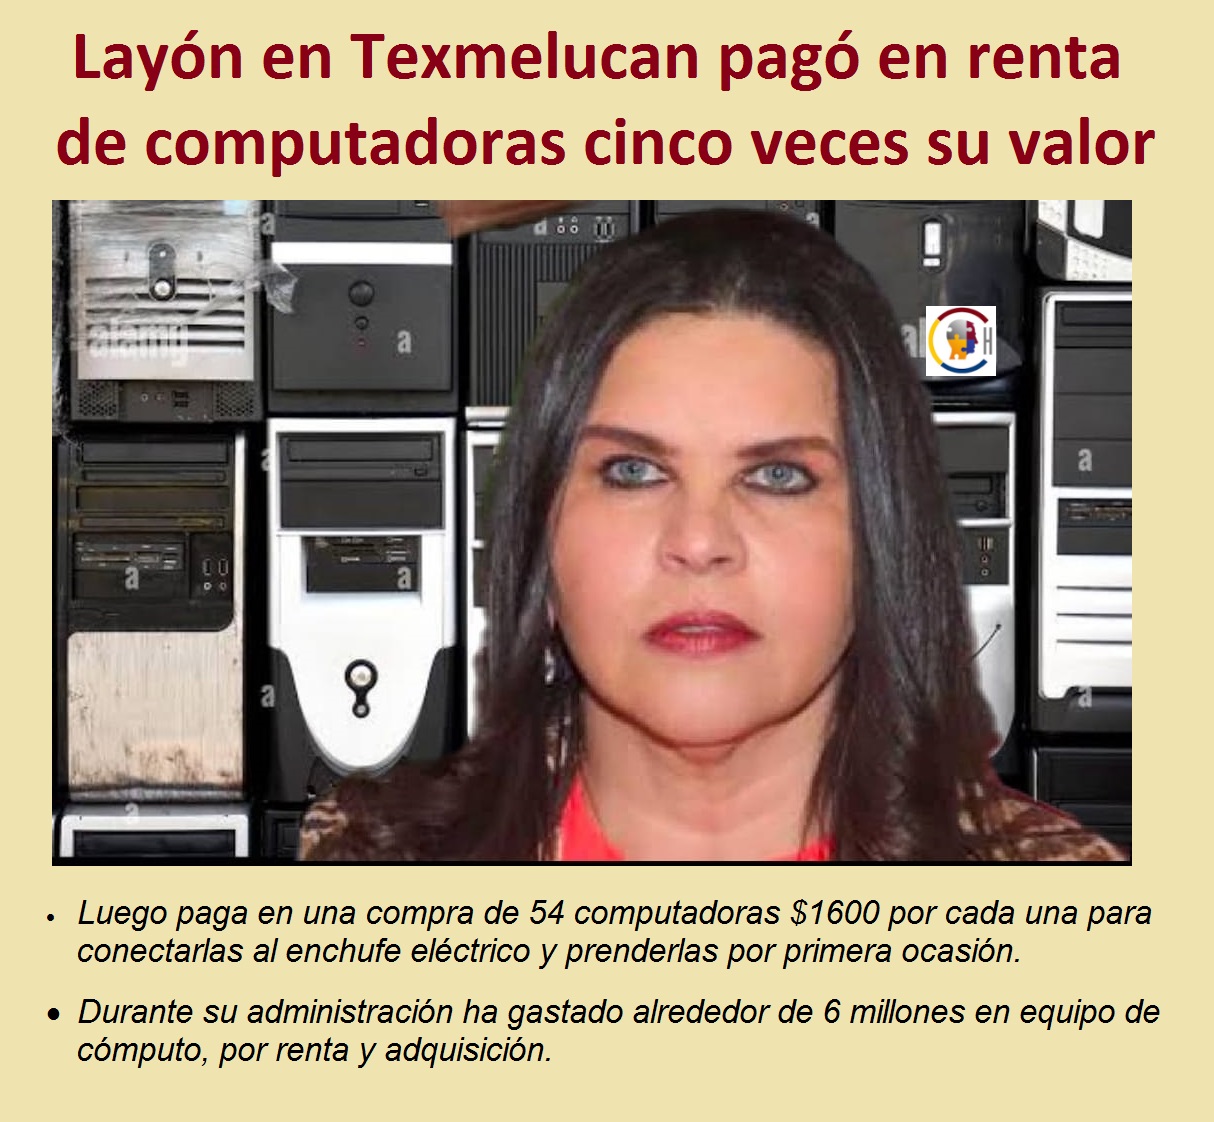 Norma Layón en Texmelucan pagó en renta de computadoras cinco veces su valor